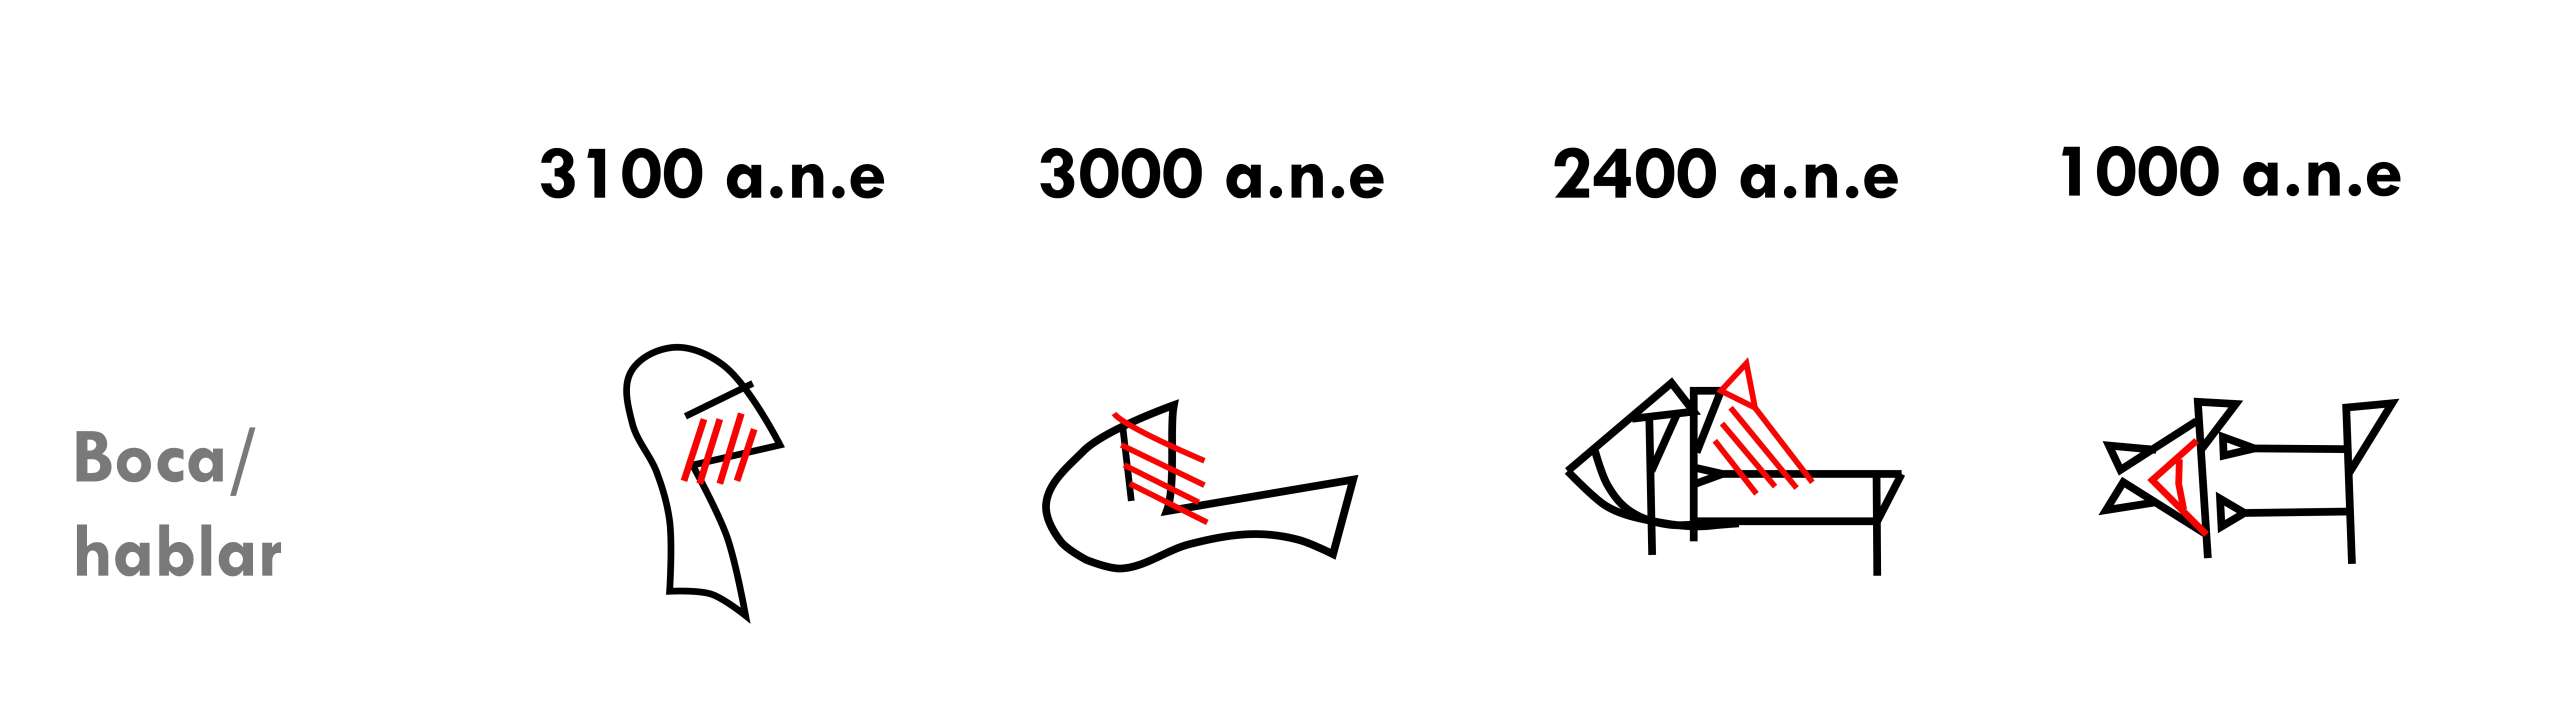 Evolución de la palabra “boca” o “hablar” desde los primeros pictogramas hasta su escritura cuneiforme tardía.